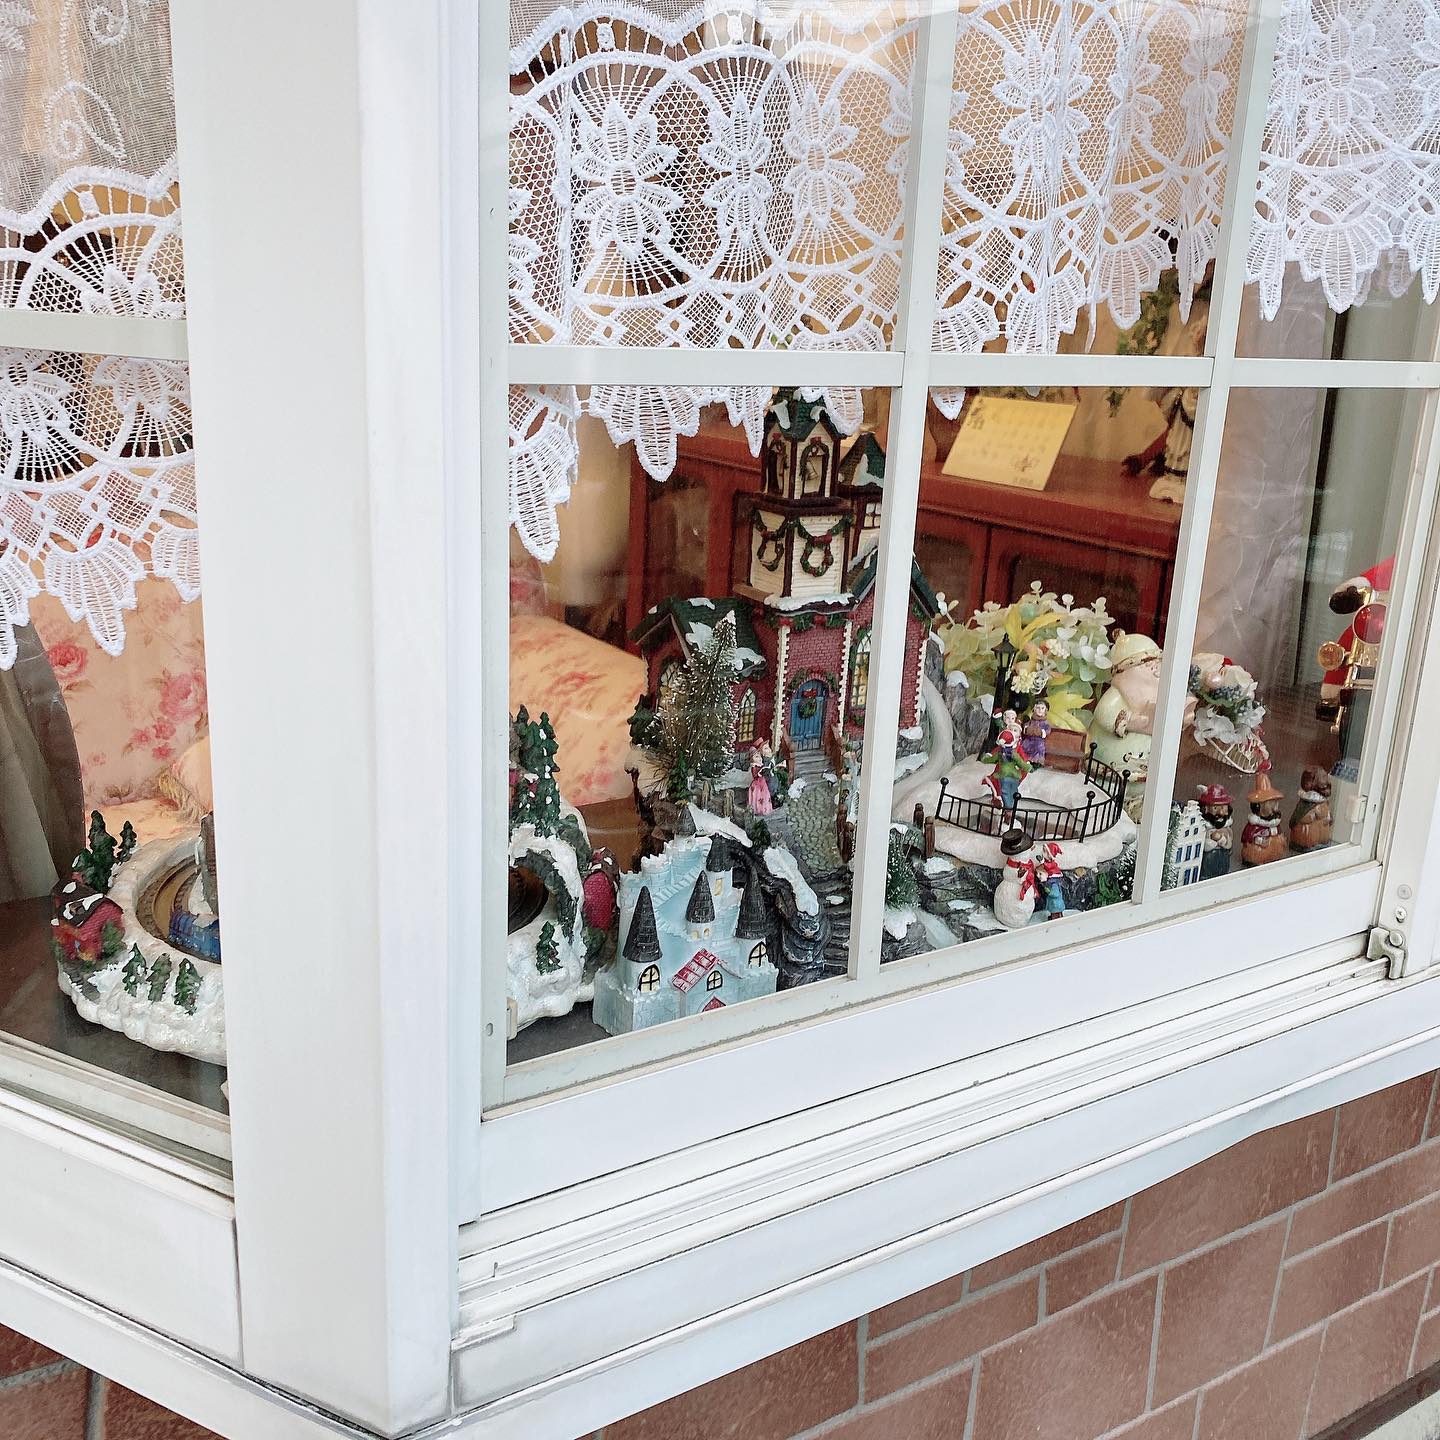 こんにちは！
はっぴーオークションです🥰

出窓をクリスマス仕様にしました🏼️

ジオラマの模型がとてもキュートですね
まだ11月ですが、心はもうクリスマス1色です( ⸍ɞ̴̶̷ ·̫ ɞ̴̶̷⸌ )

当店にもサンタさん来ないかな🏻♪